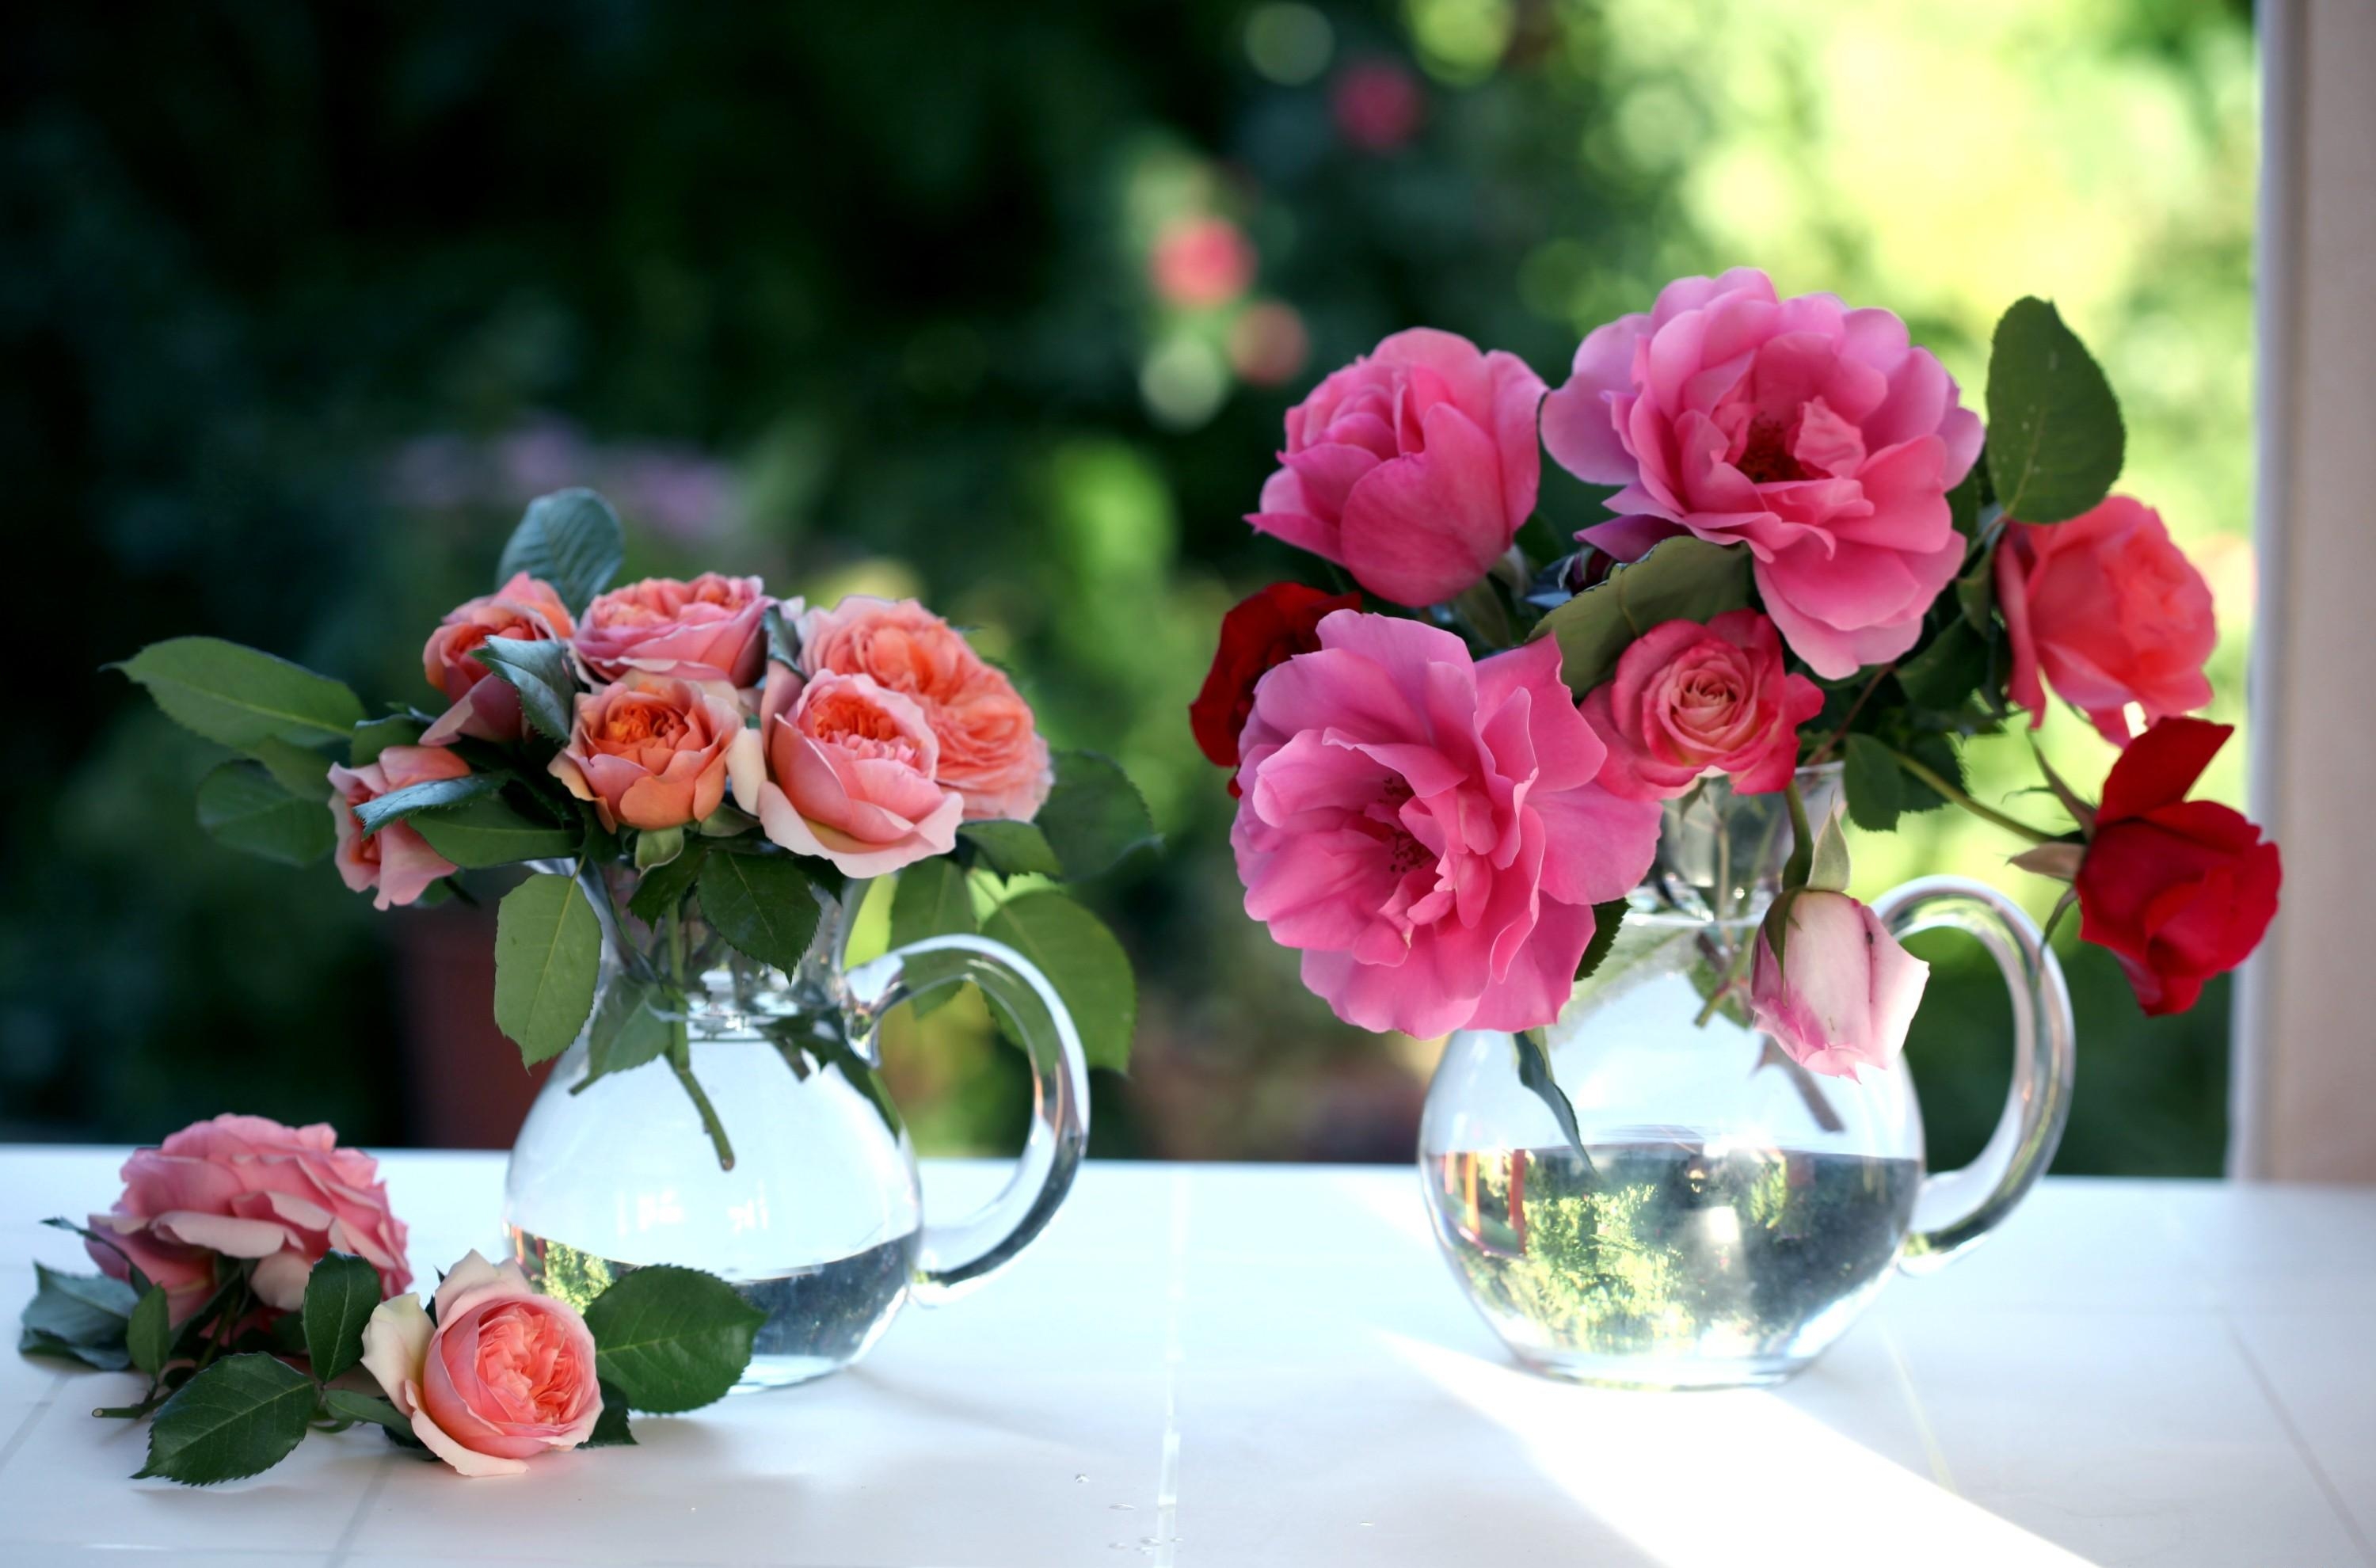 bouquets, flowers, roses, window, jugs